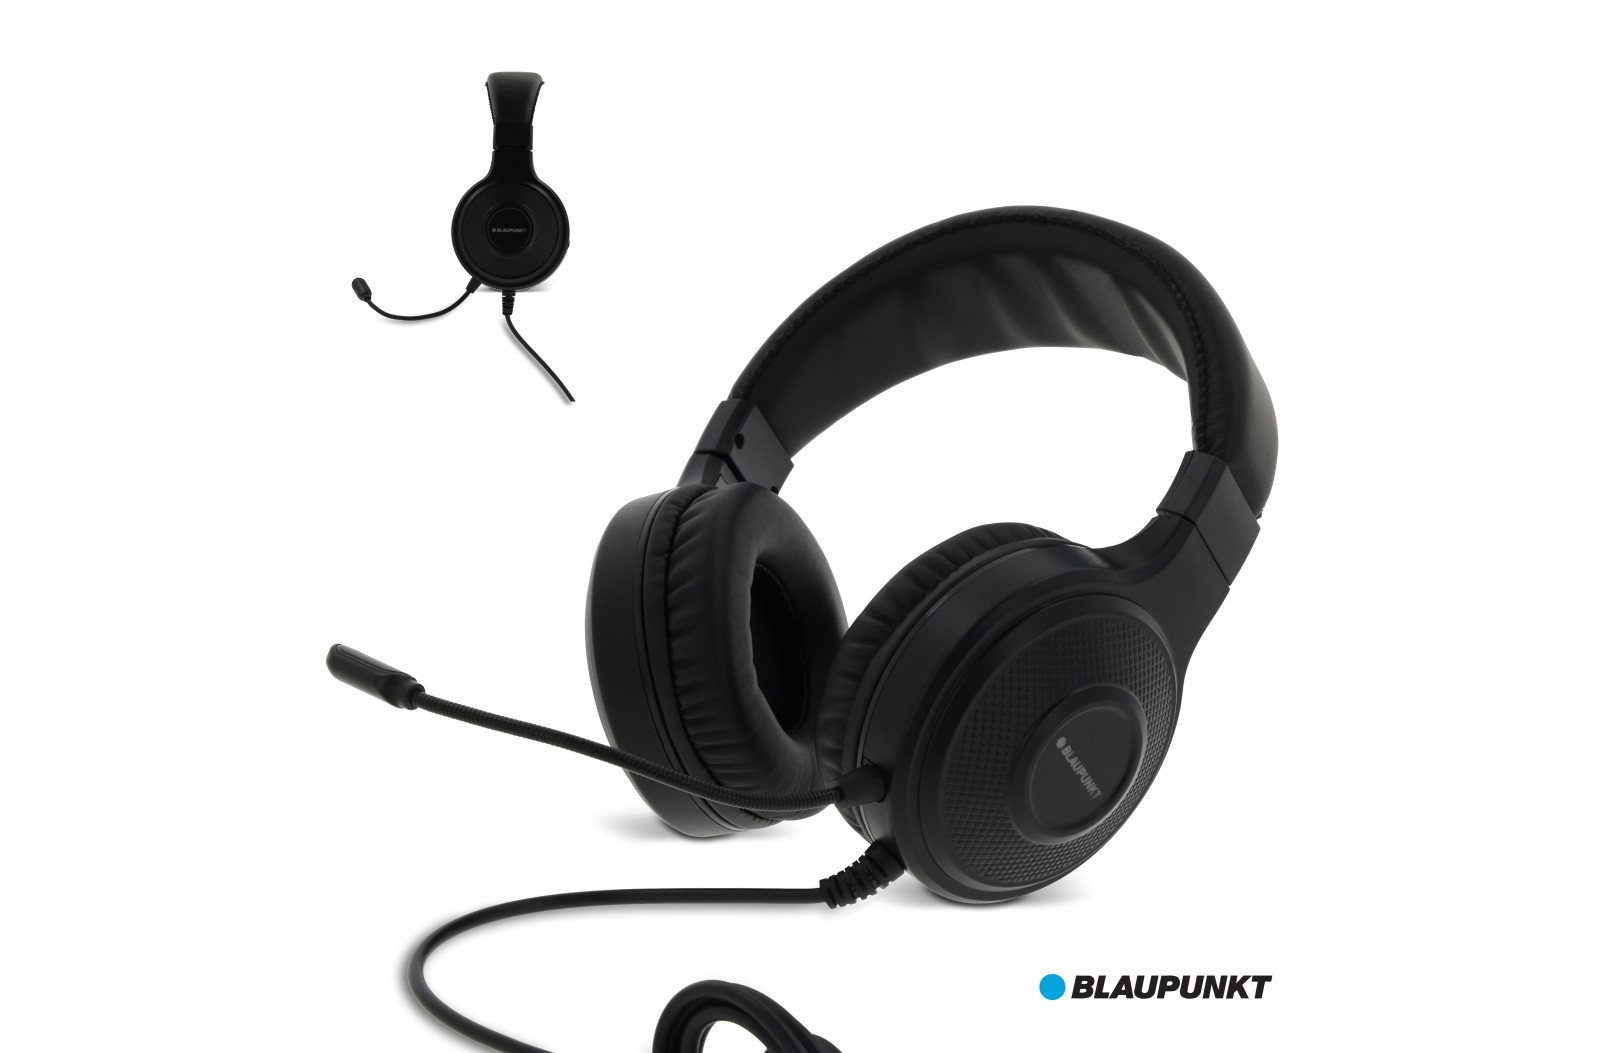 relais Banzai Bondgenoot BLP069 | Blaupunkt Gaming Headphone